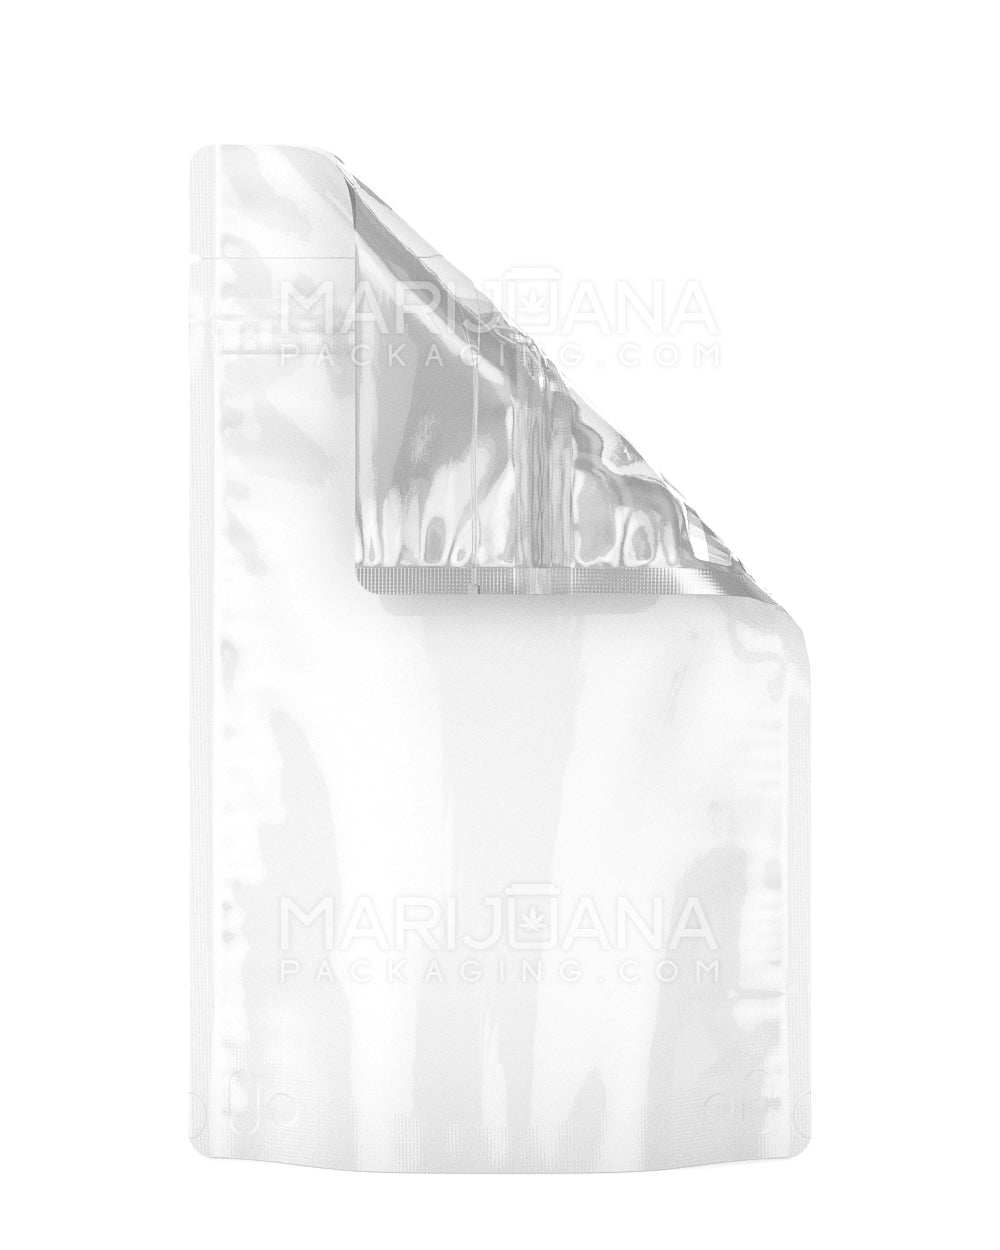 Tamper Evident Glossy White Vista Mylar Bags | 5in x 8.1in - 14g | Sample - 1